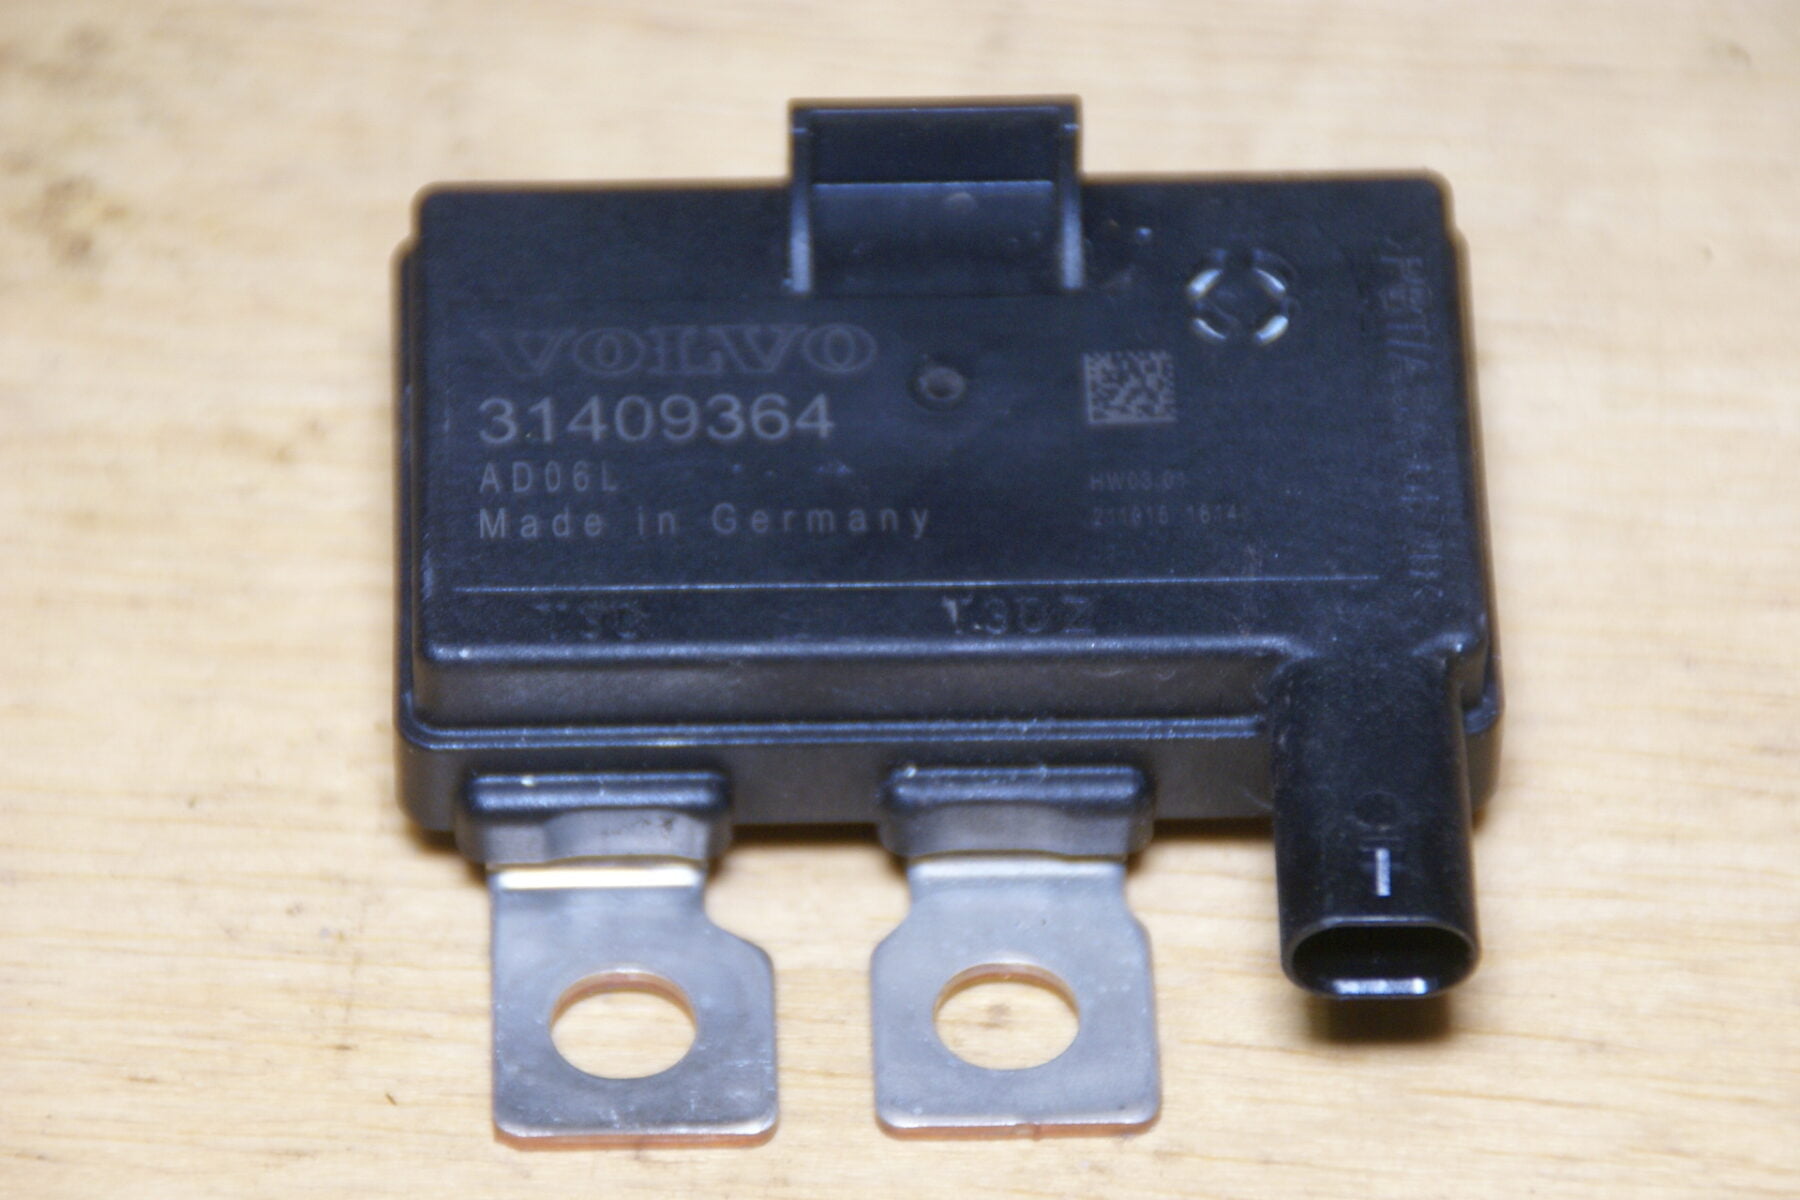 DSC00946 Volvo V70 startstop diode 1409364